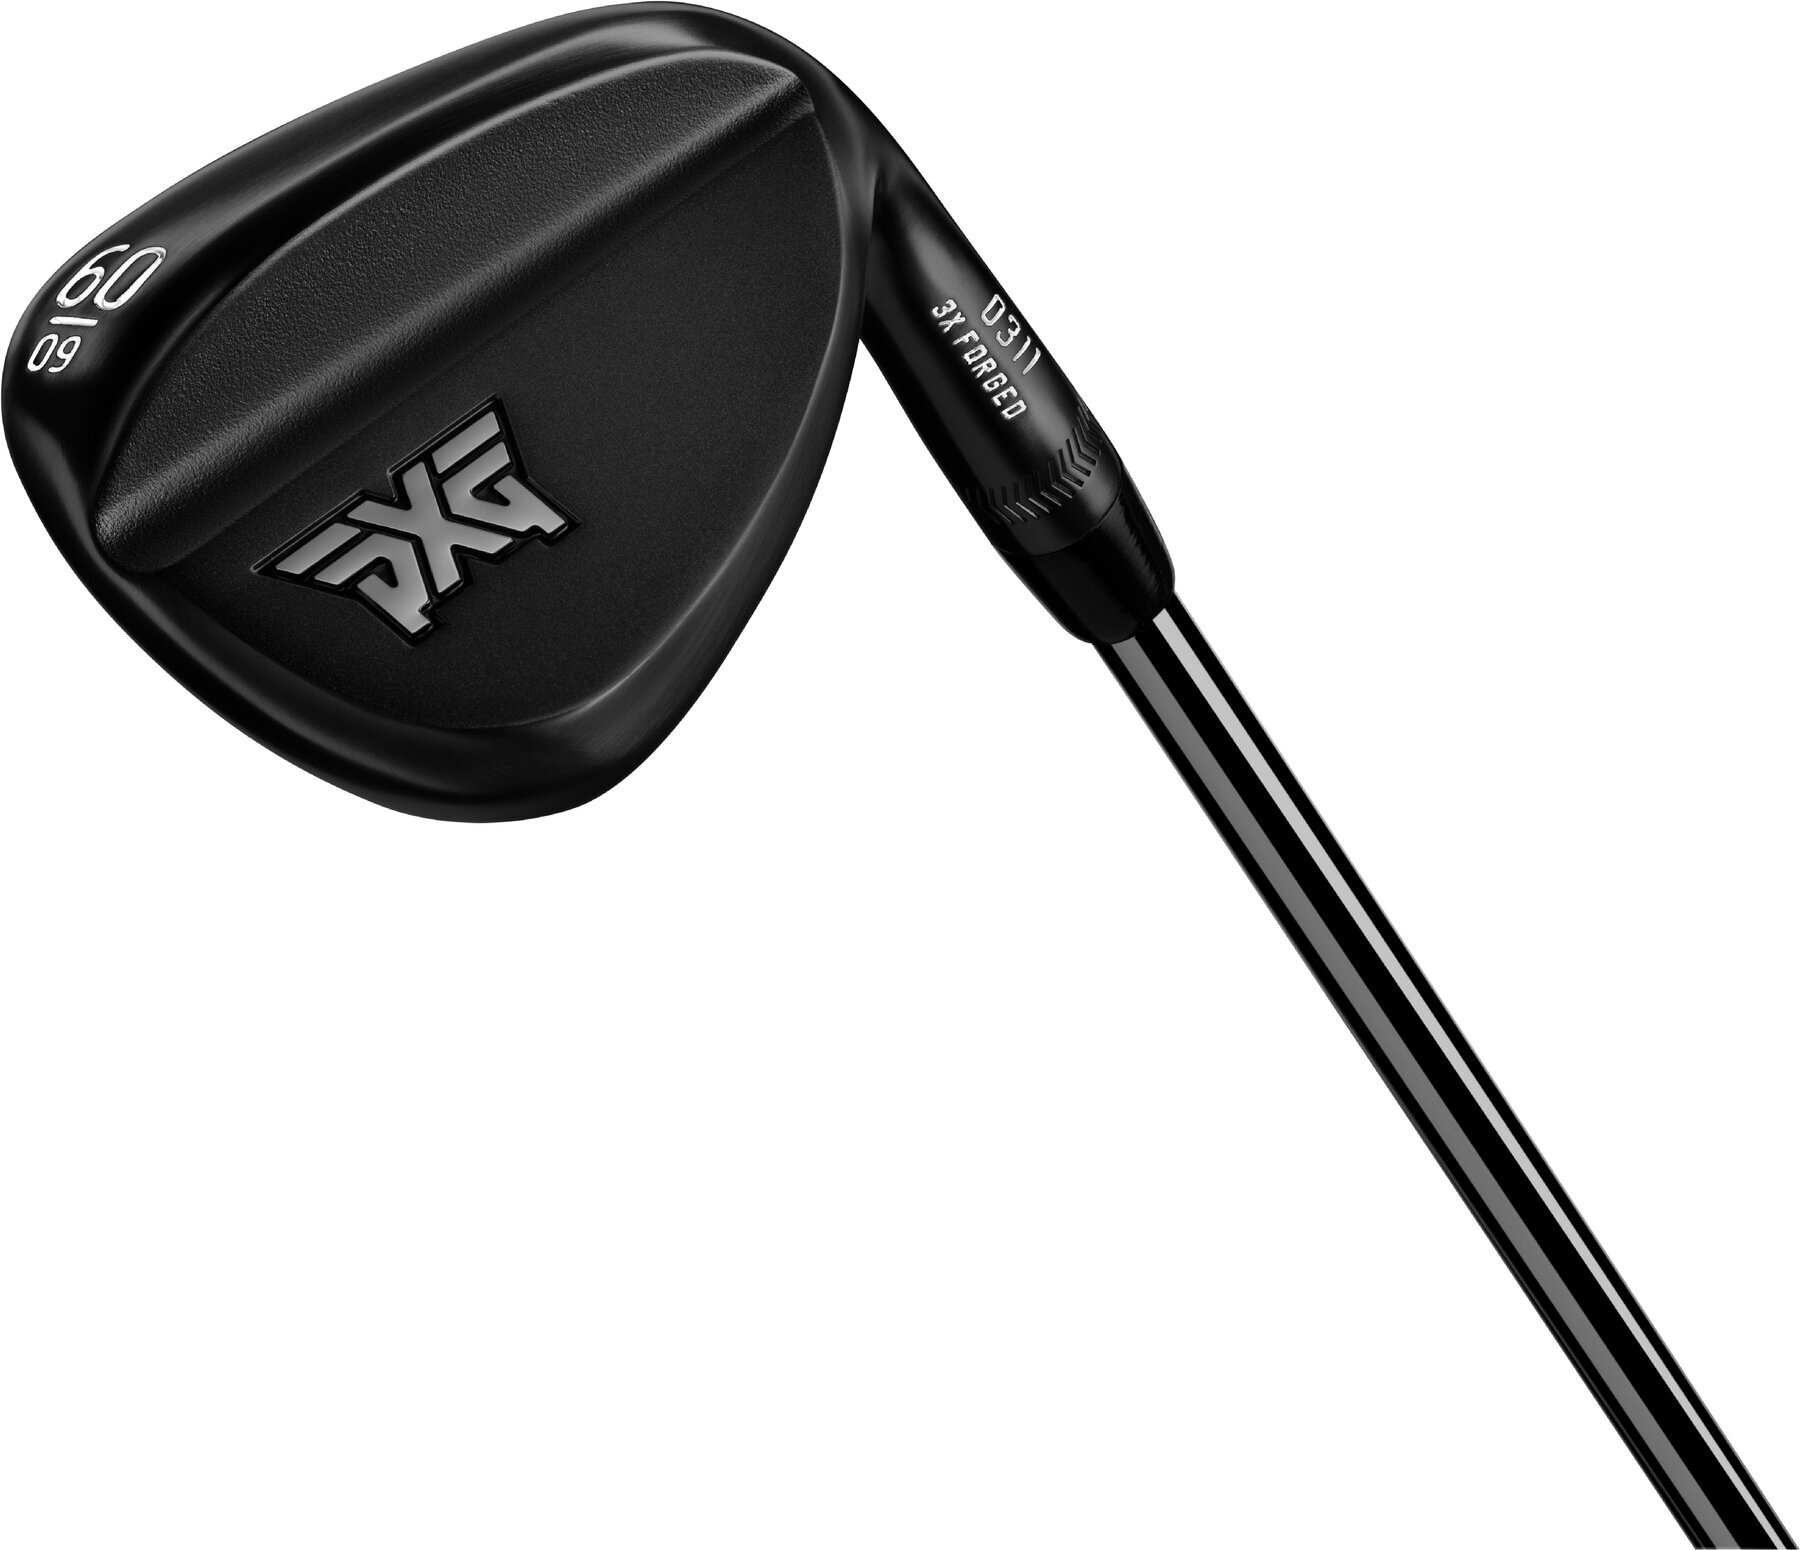 Club de golf - wedge PXG V3 0311 Forged Black Club de golf - wedge